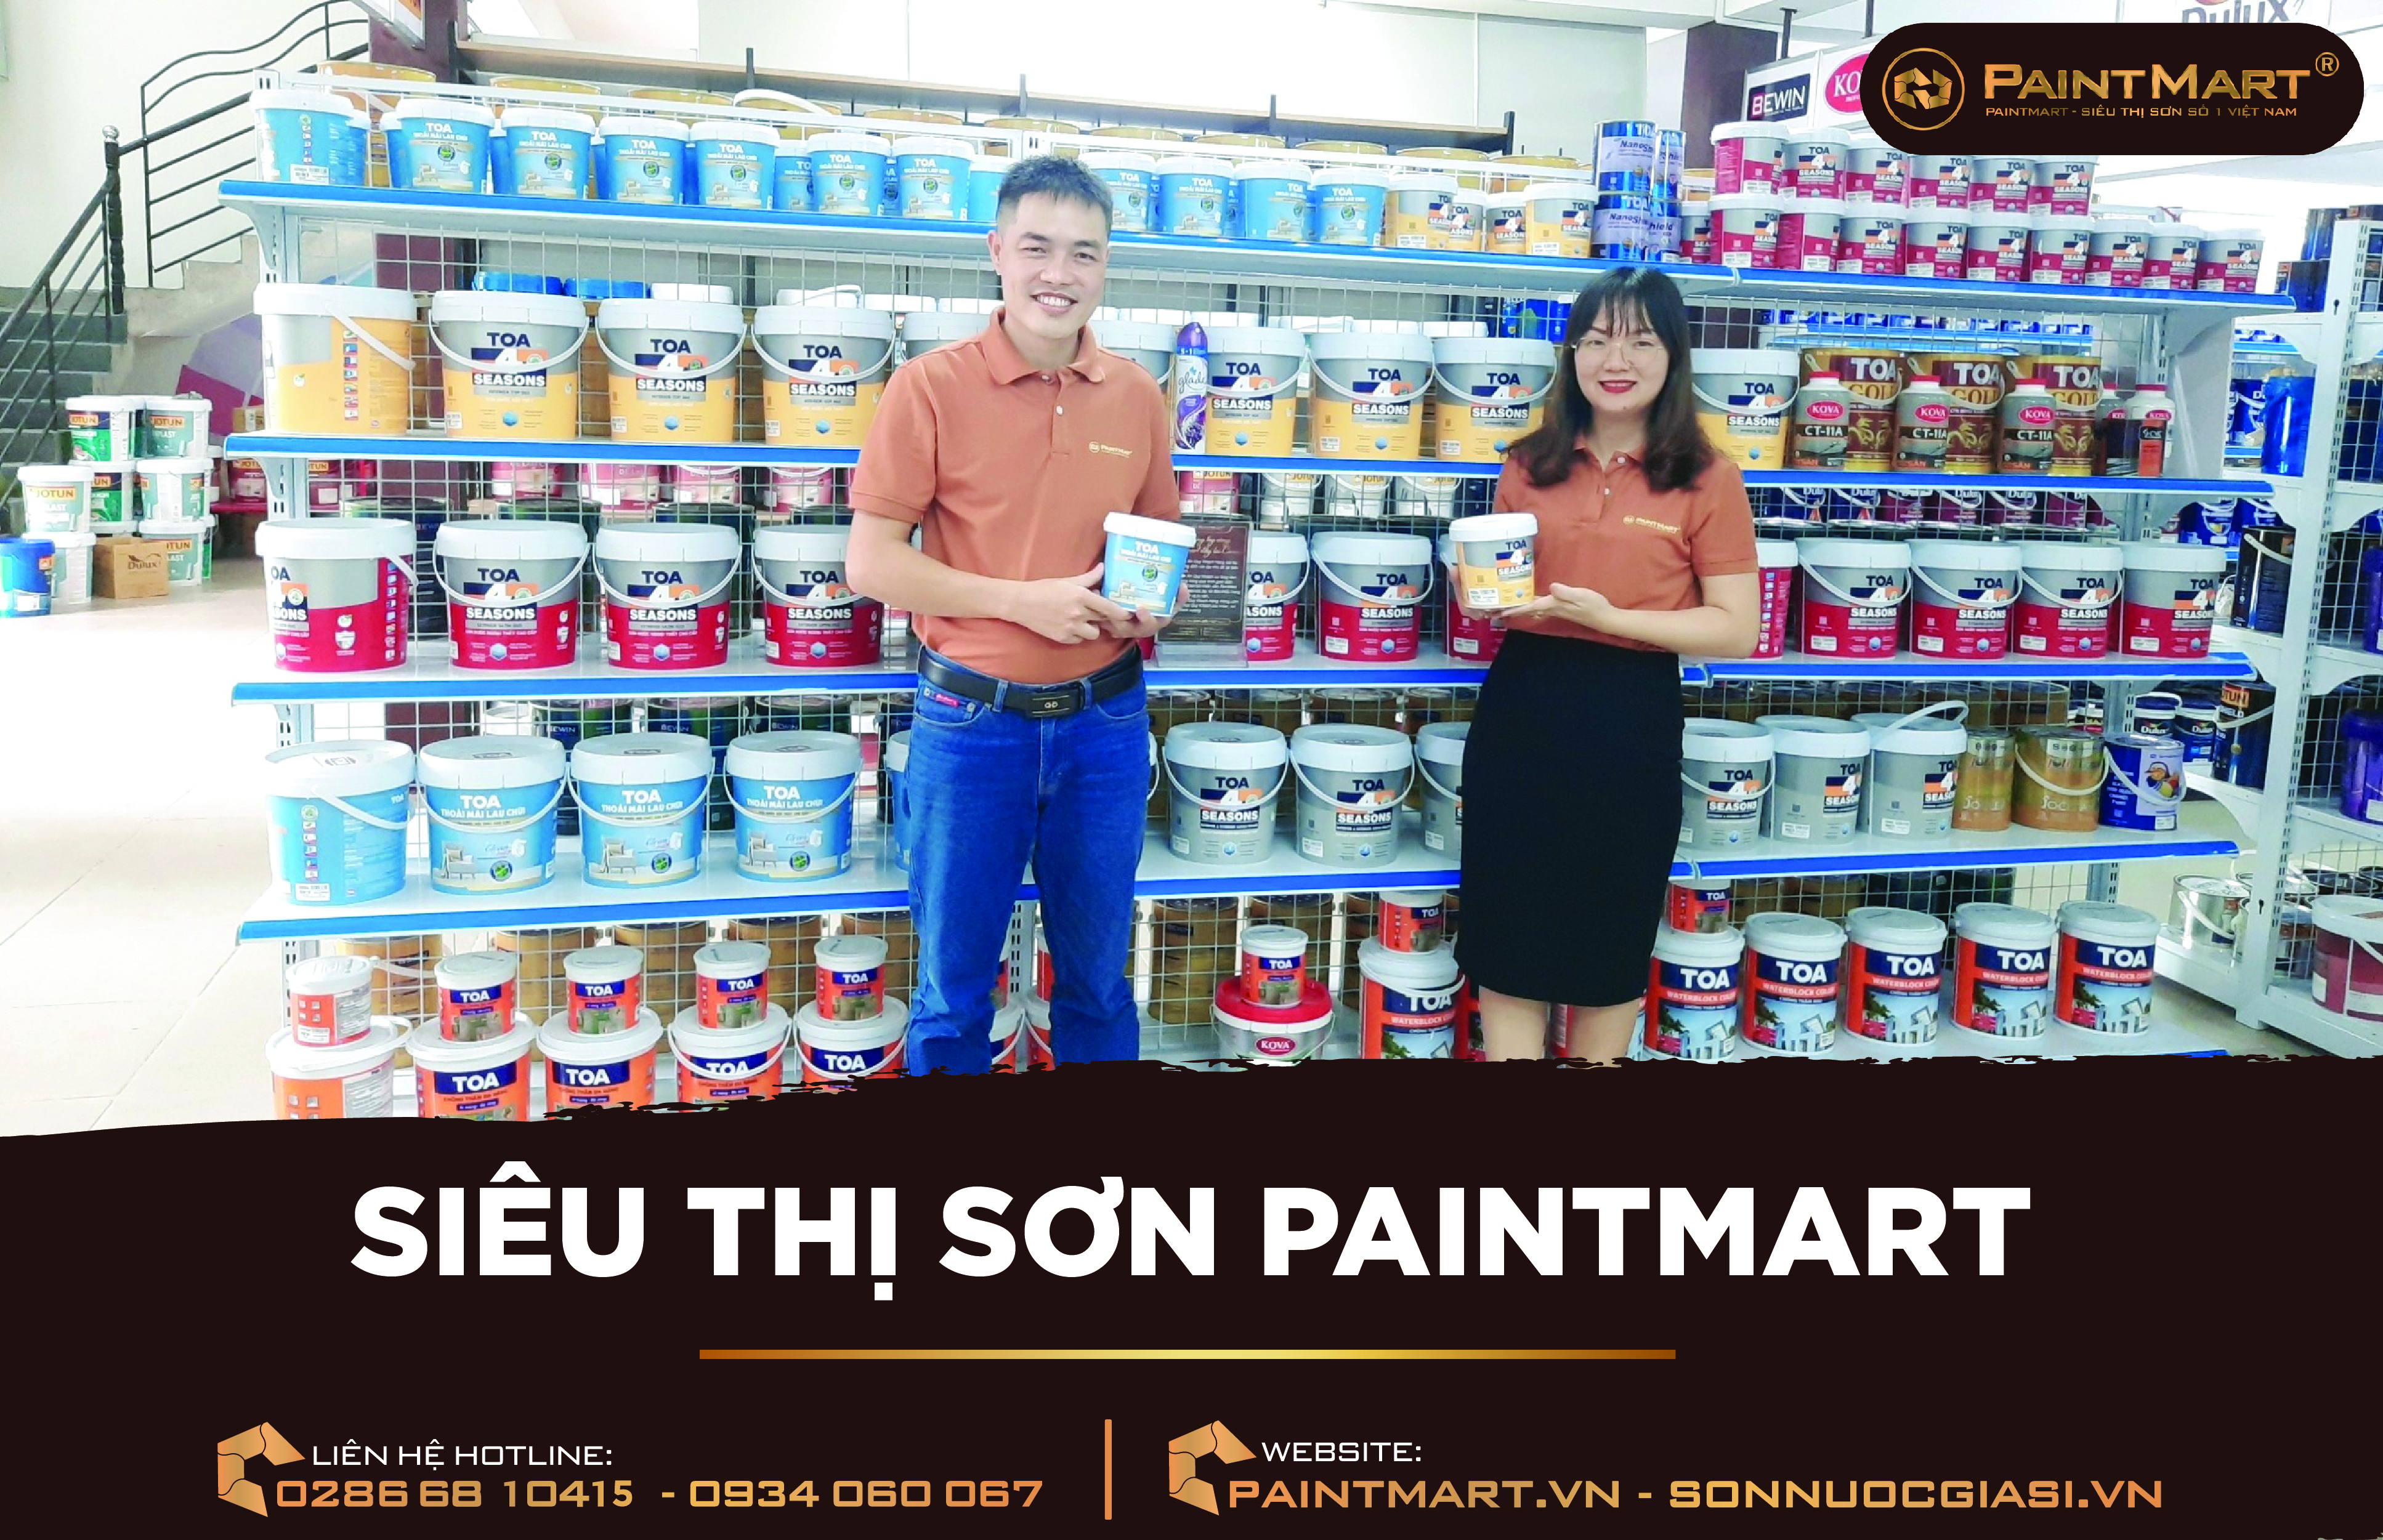 Sơn Toa quận Tân Bình là địa chỉ đáng tin cậy để mua sắm sơn chất lượng cao. Chúng tôi mang đến cho bạn những sản phẩm của Sơn Kova với giá cả phải chăng và dịch vụ tốt nhất. Hãy xem hình ảnh để biết thêm về những sản phẩm tuyệt vời của chúng tôi.